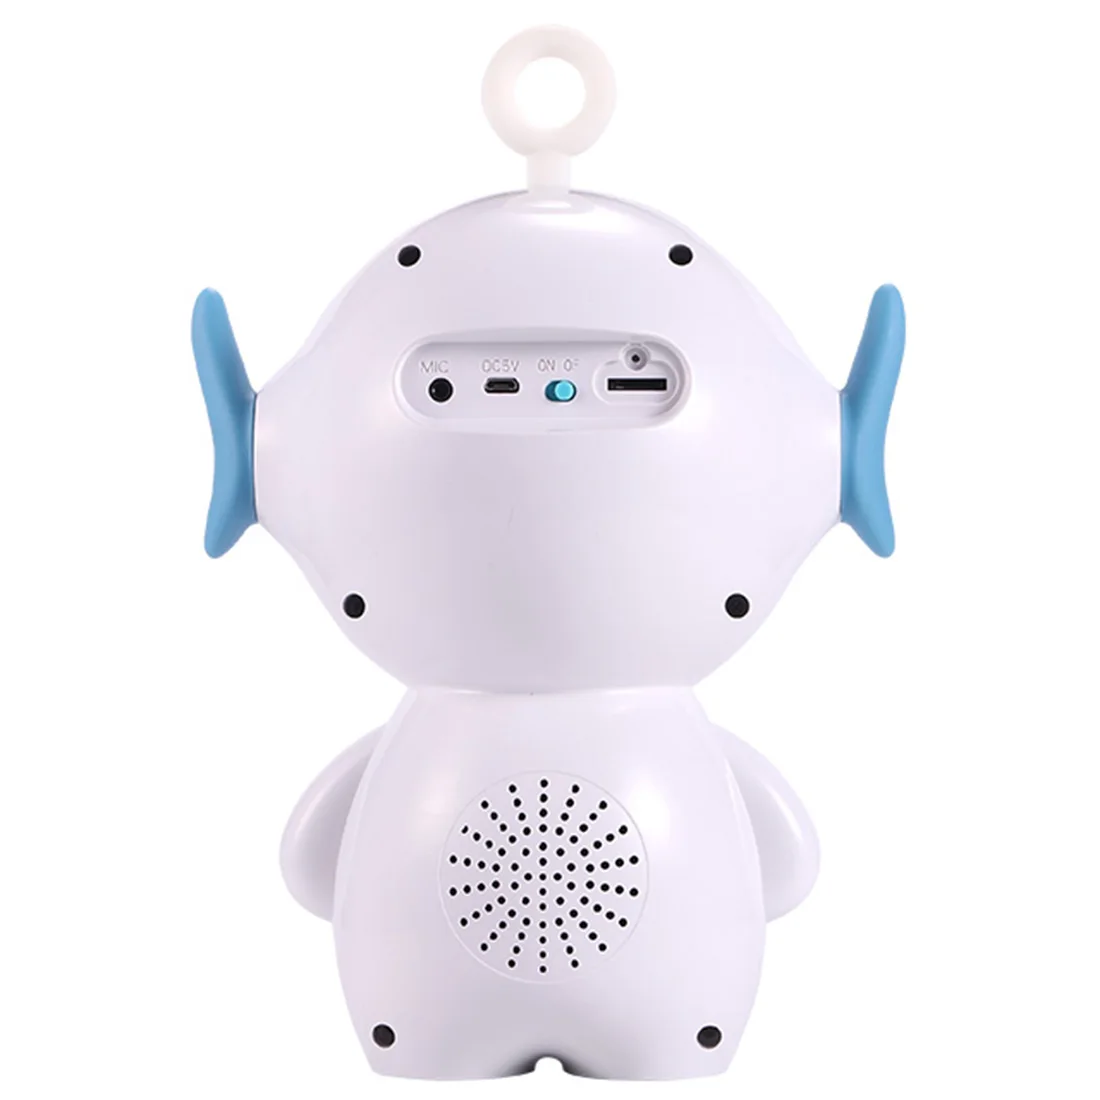 Дети умный сопровождать игрушки Smart RC робот интерактивные голос играть музыка приложение голосовой чат повествование для малыша подарок на день рожден